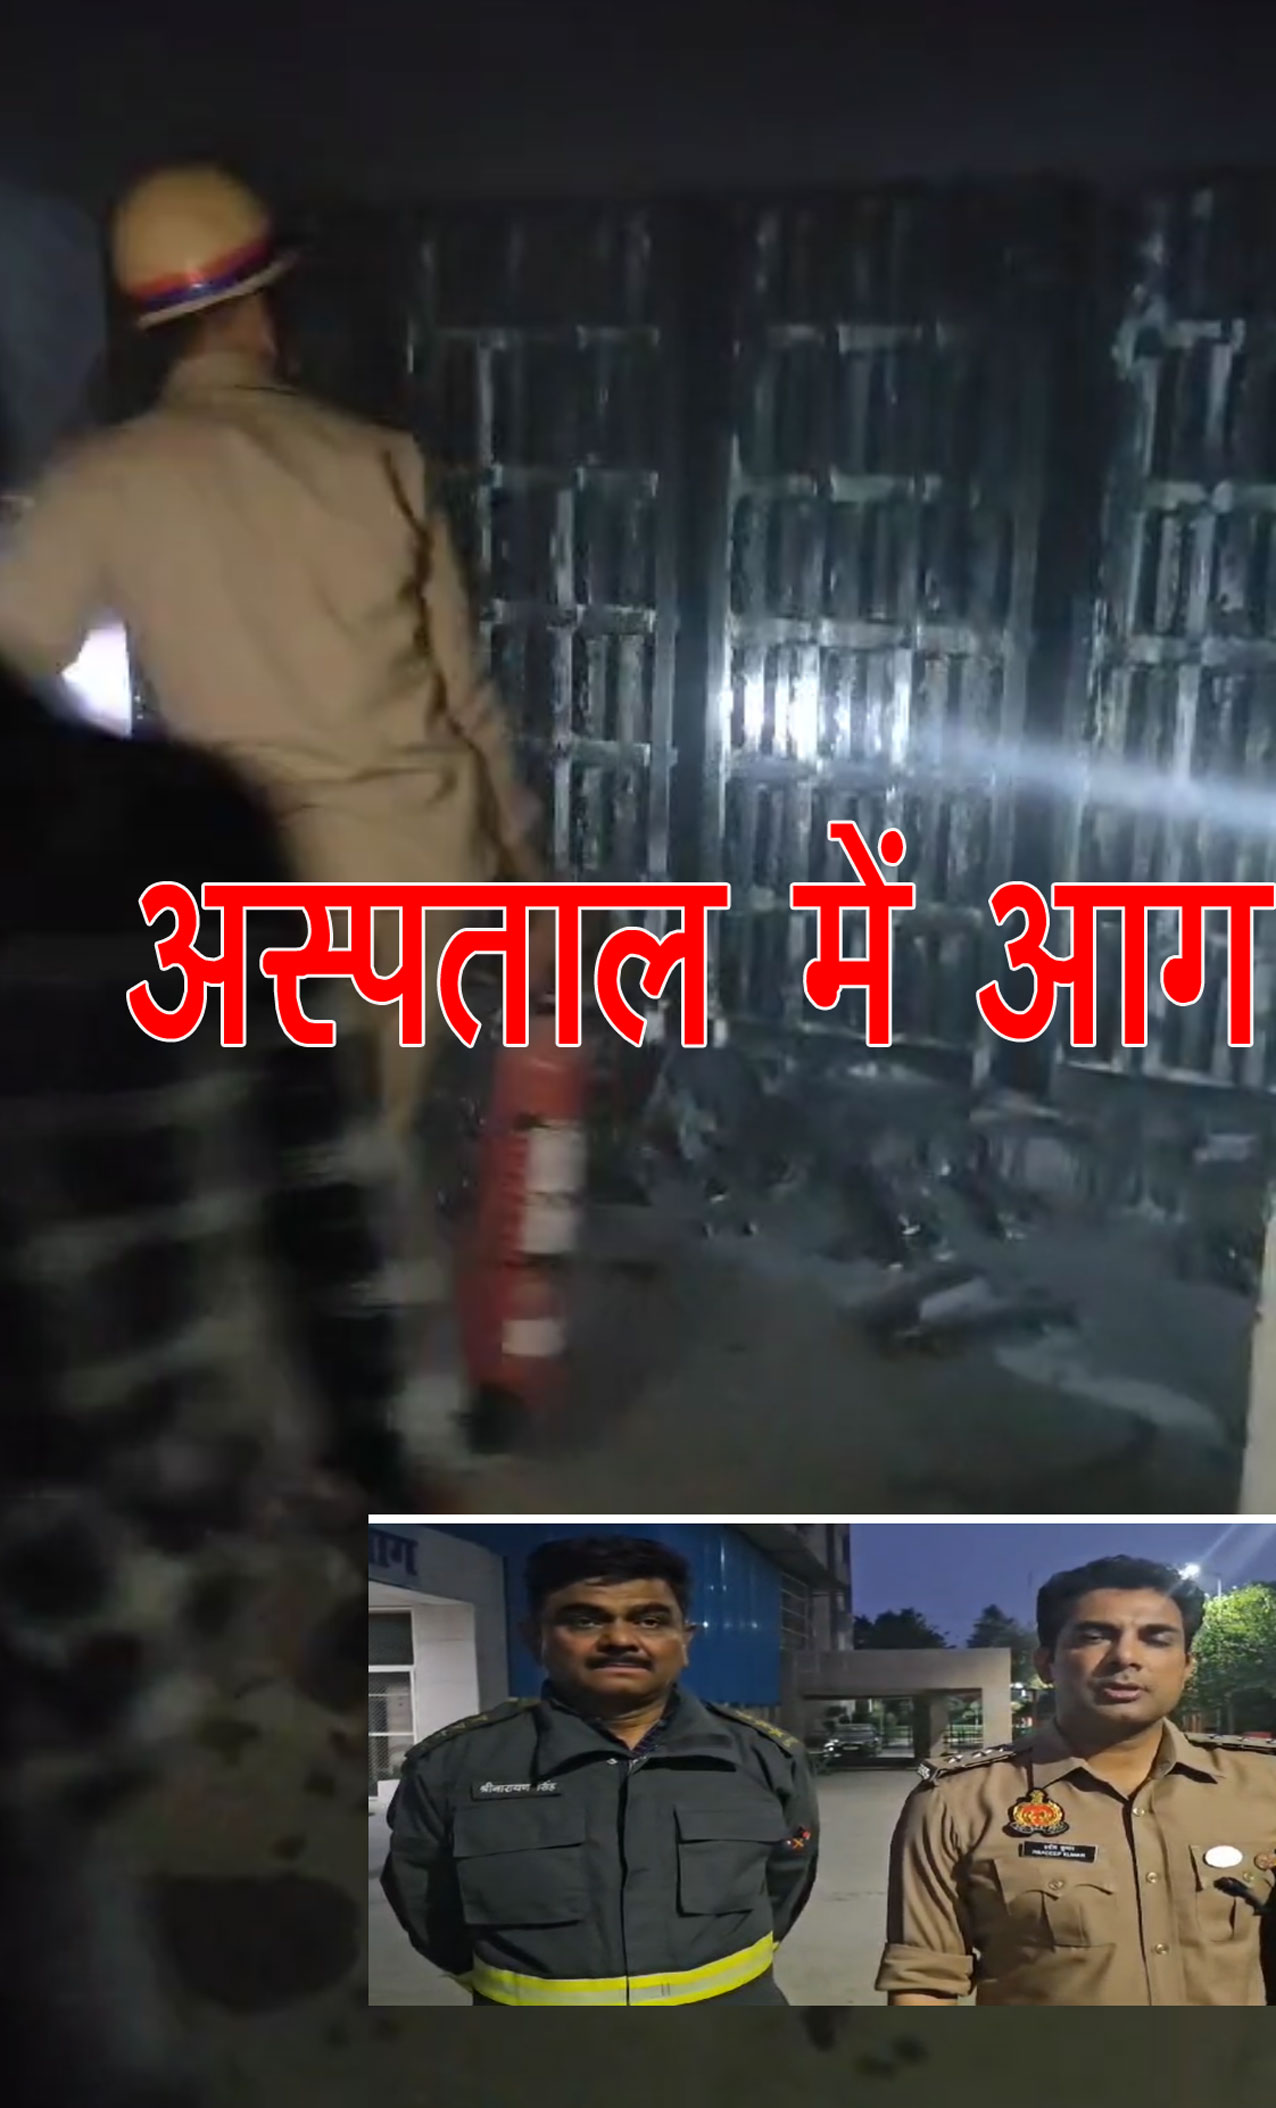 Noida Breaking: जिला अस्पताल के बेसमेंट में आग, डॉक्टरों की सूझबूझ ने बचाया बड़ा हादसा